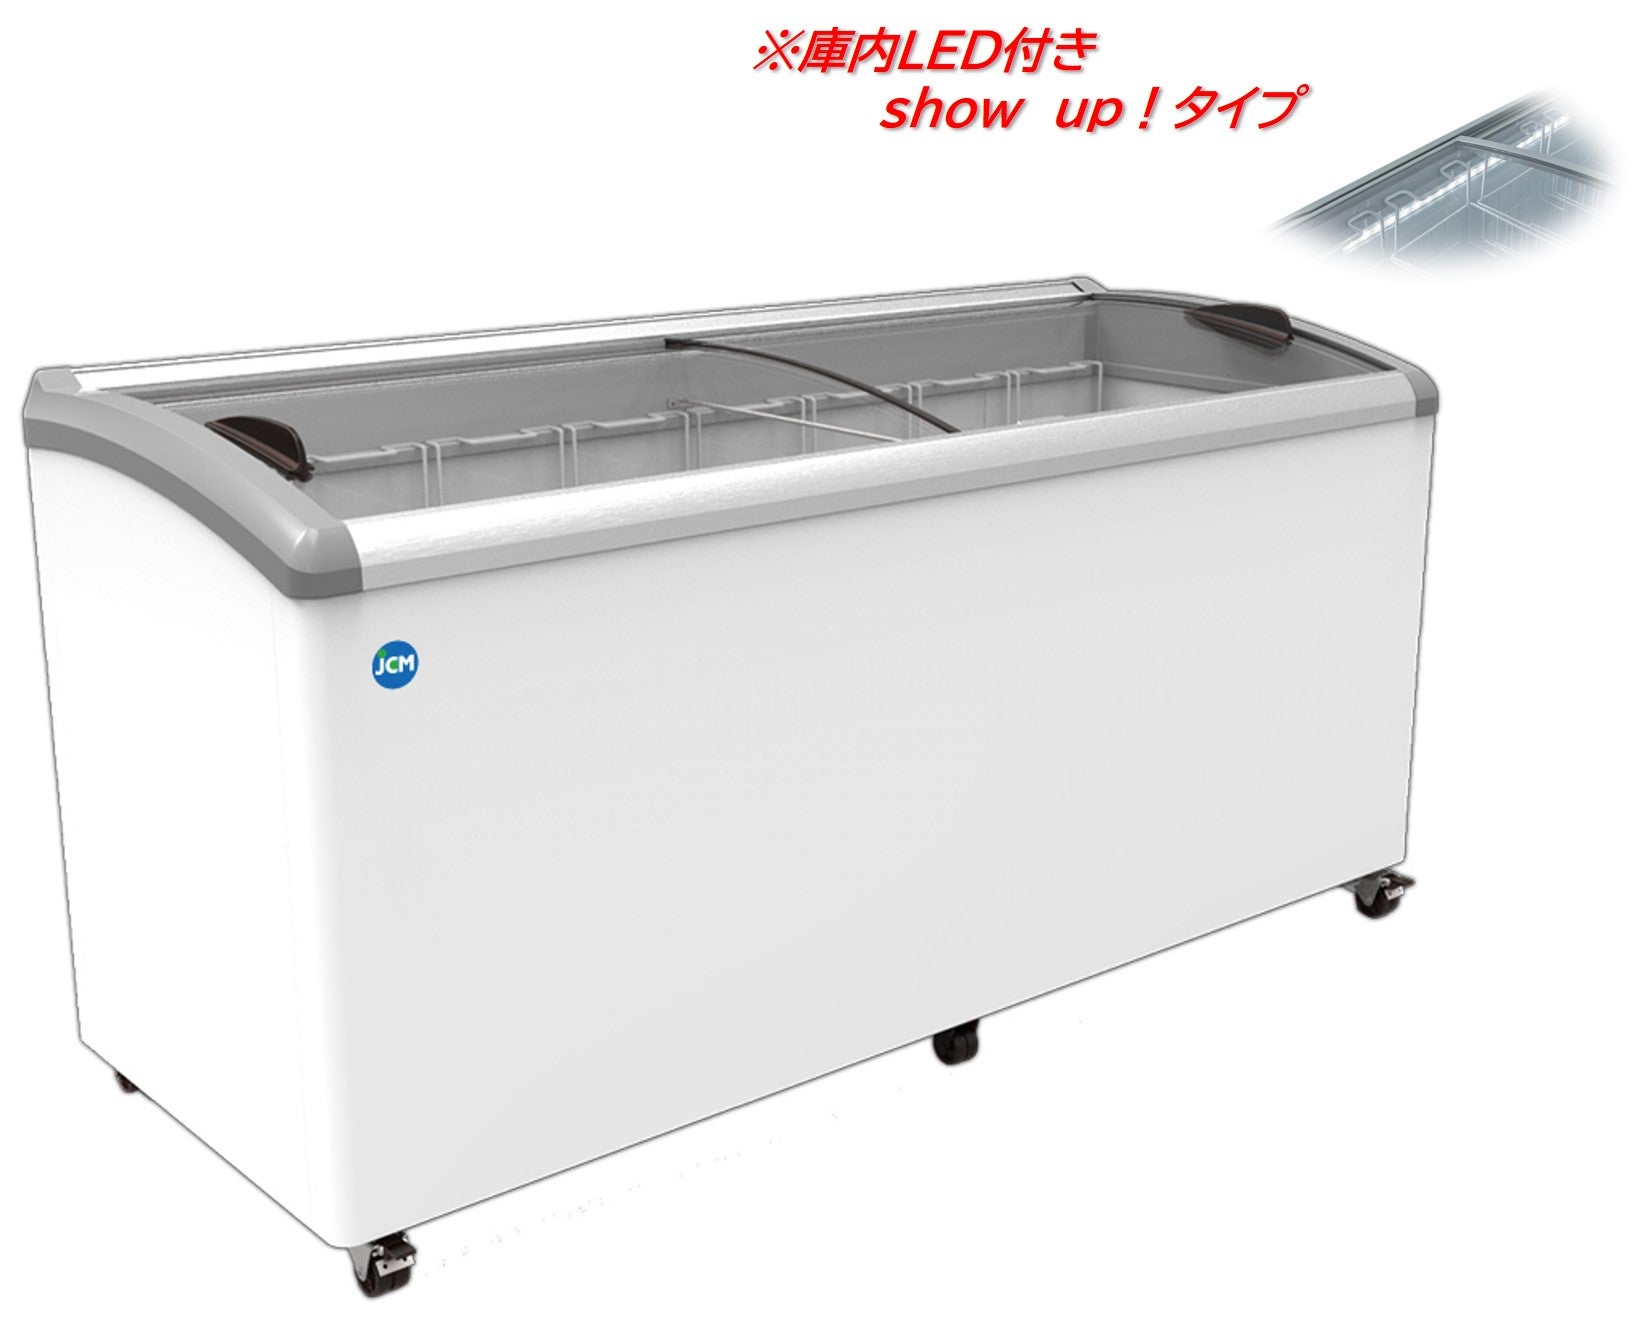 JCMCS-405L美品 JCM 業務用 冷凍ショーケース JCMCS-405L 100V 大阪④